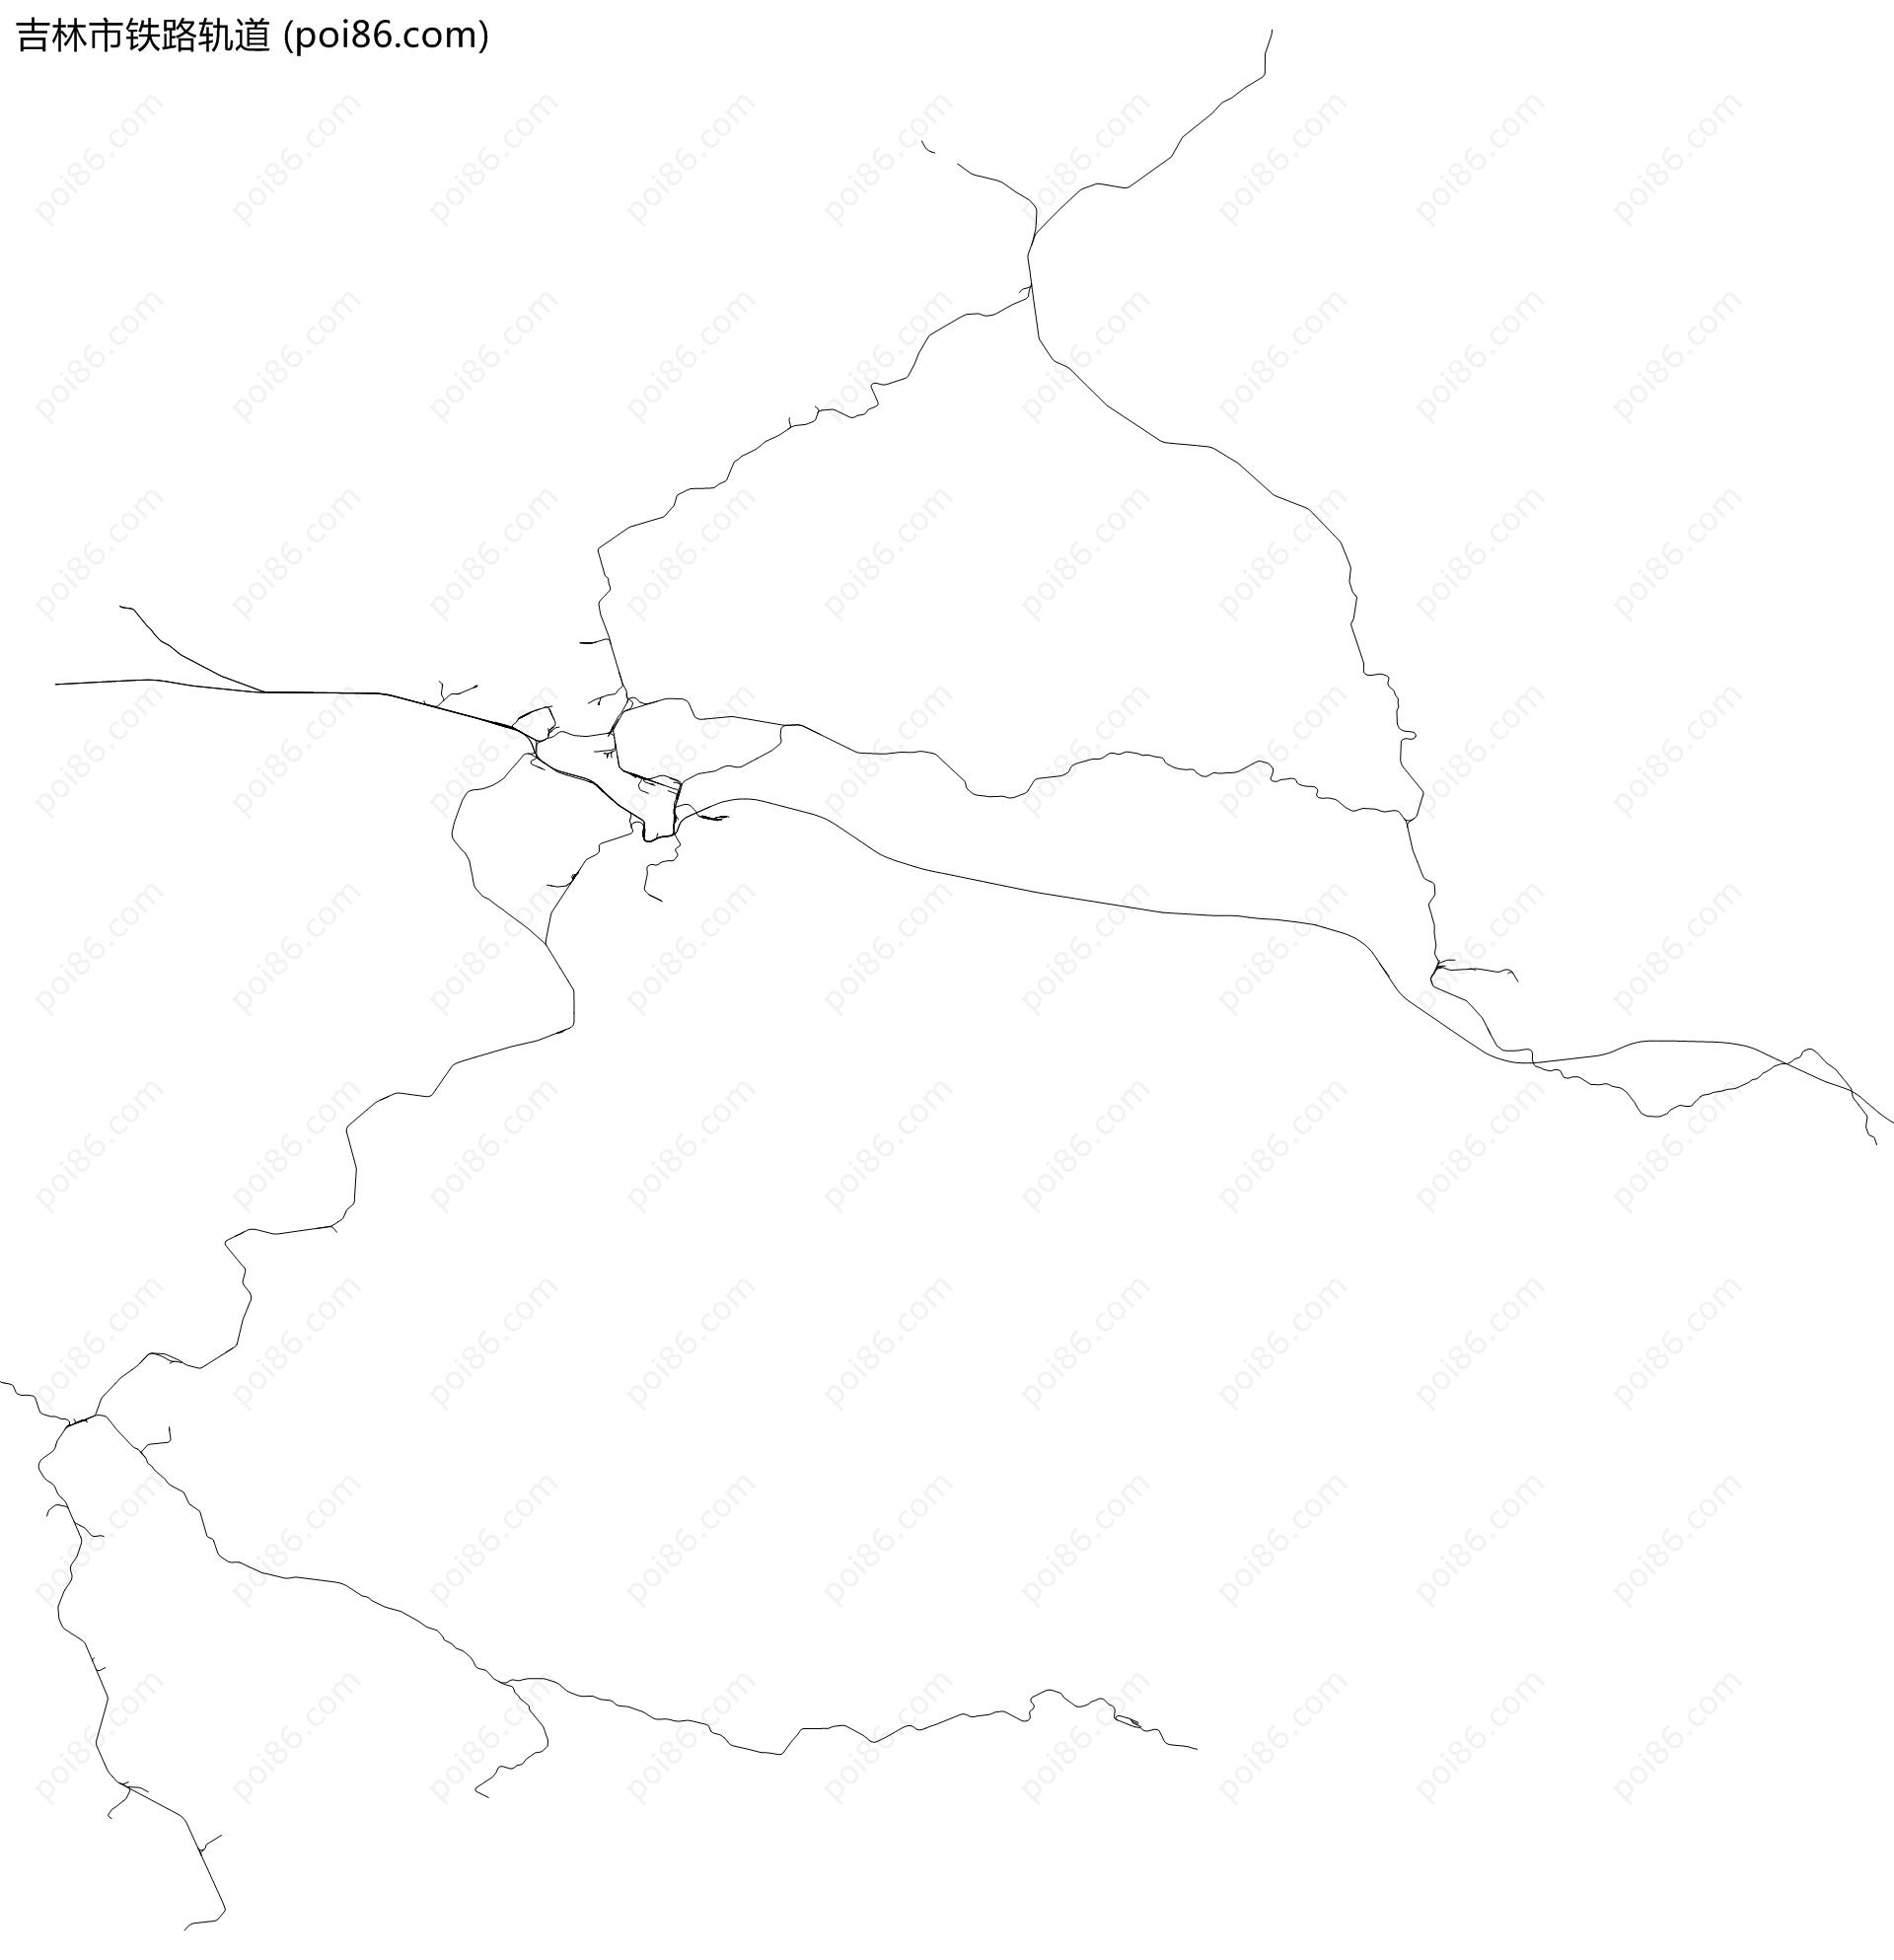 吉林市铁路轨道地图